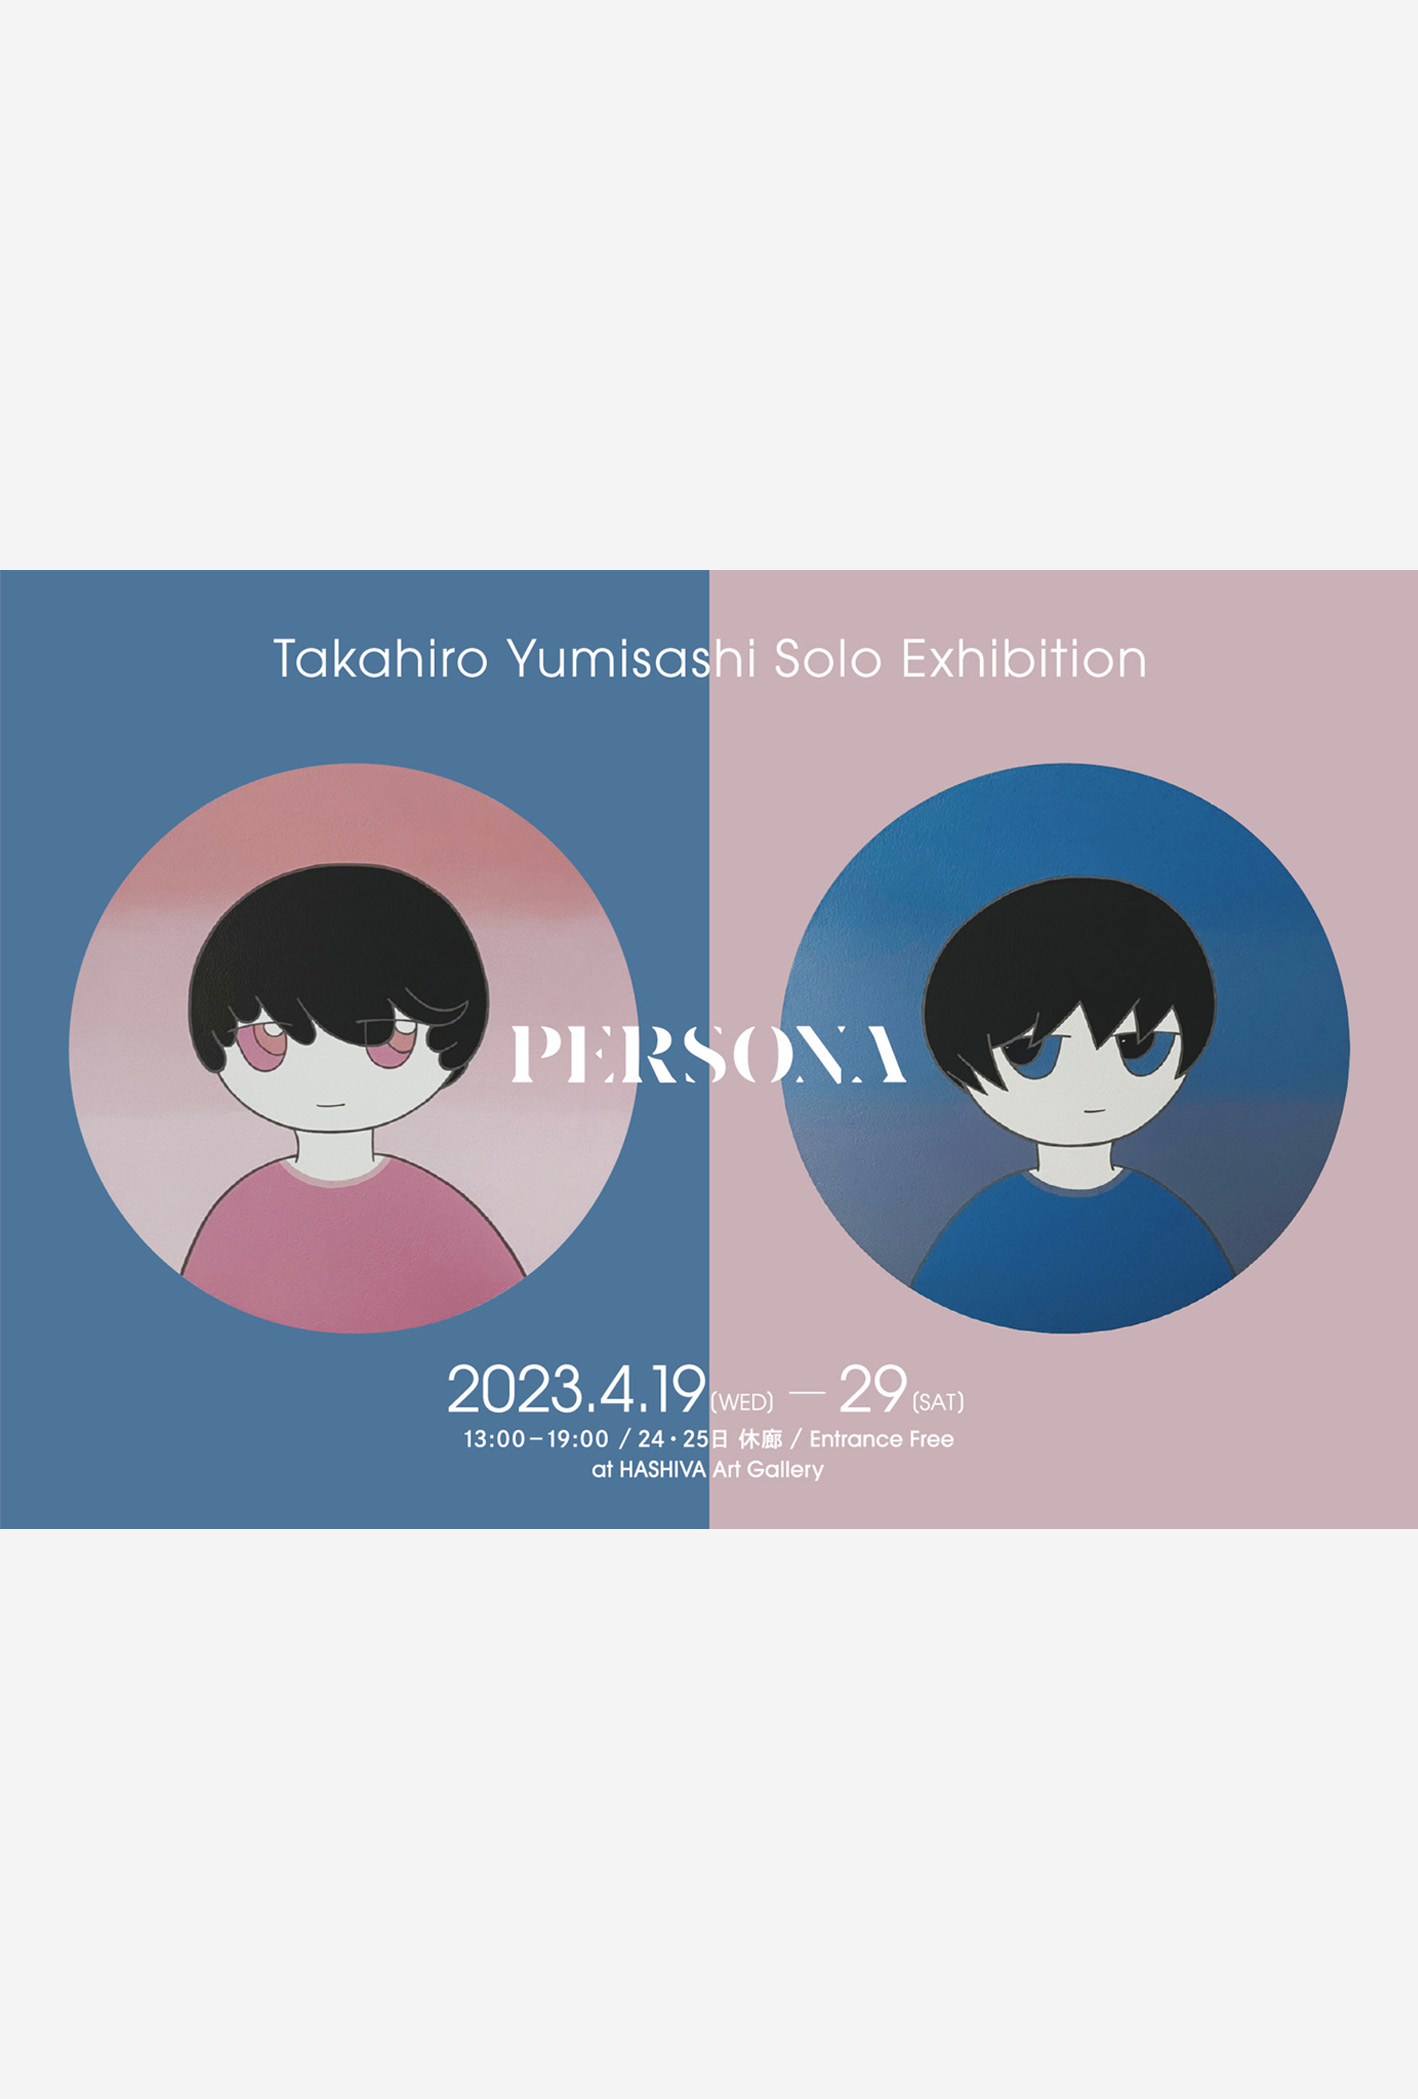 若手現代アーティスト・弓指貴弘の展示会「PERSONA」のメインビジュアル